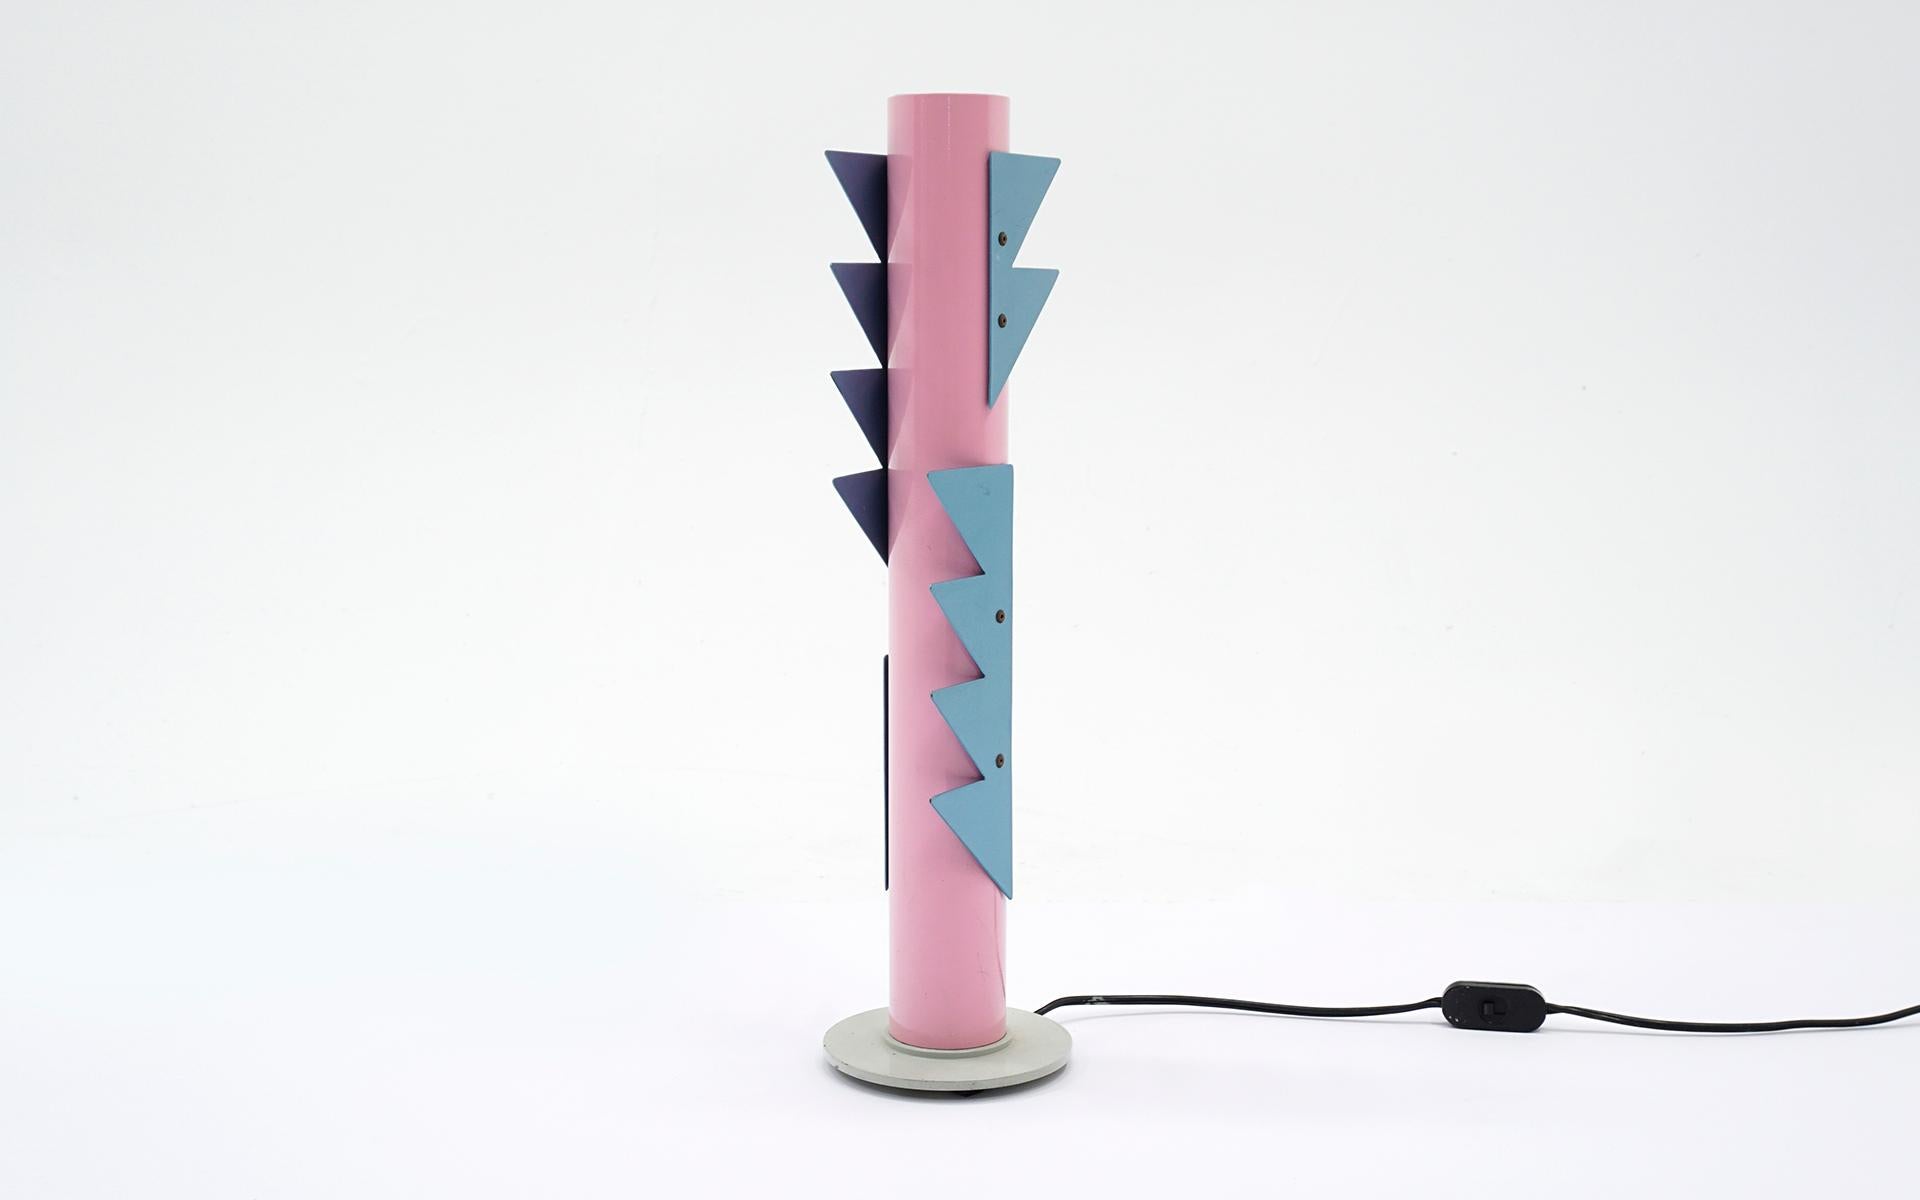 Rare lampe de table postmoderne conçue par Alessandro Mendini pour le Studio Alchimia / Gruppo Alchimia. Très bon état avec peu ou pas de signes d'usure. Aluminium laqué rose et bleu avec la source de lumière en haut. Câblage européen. Peut être